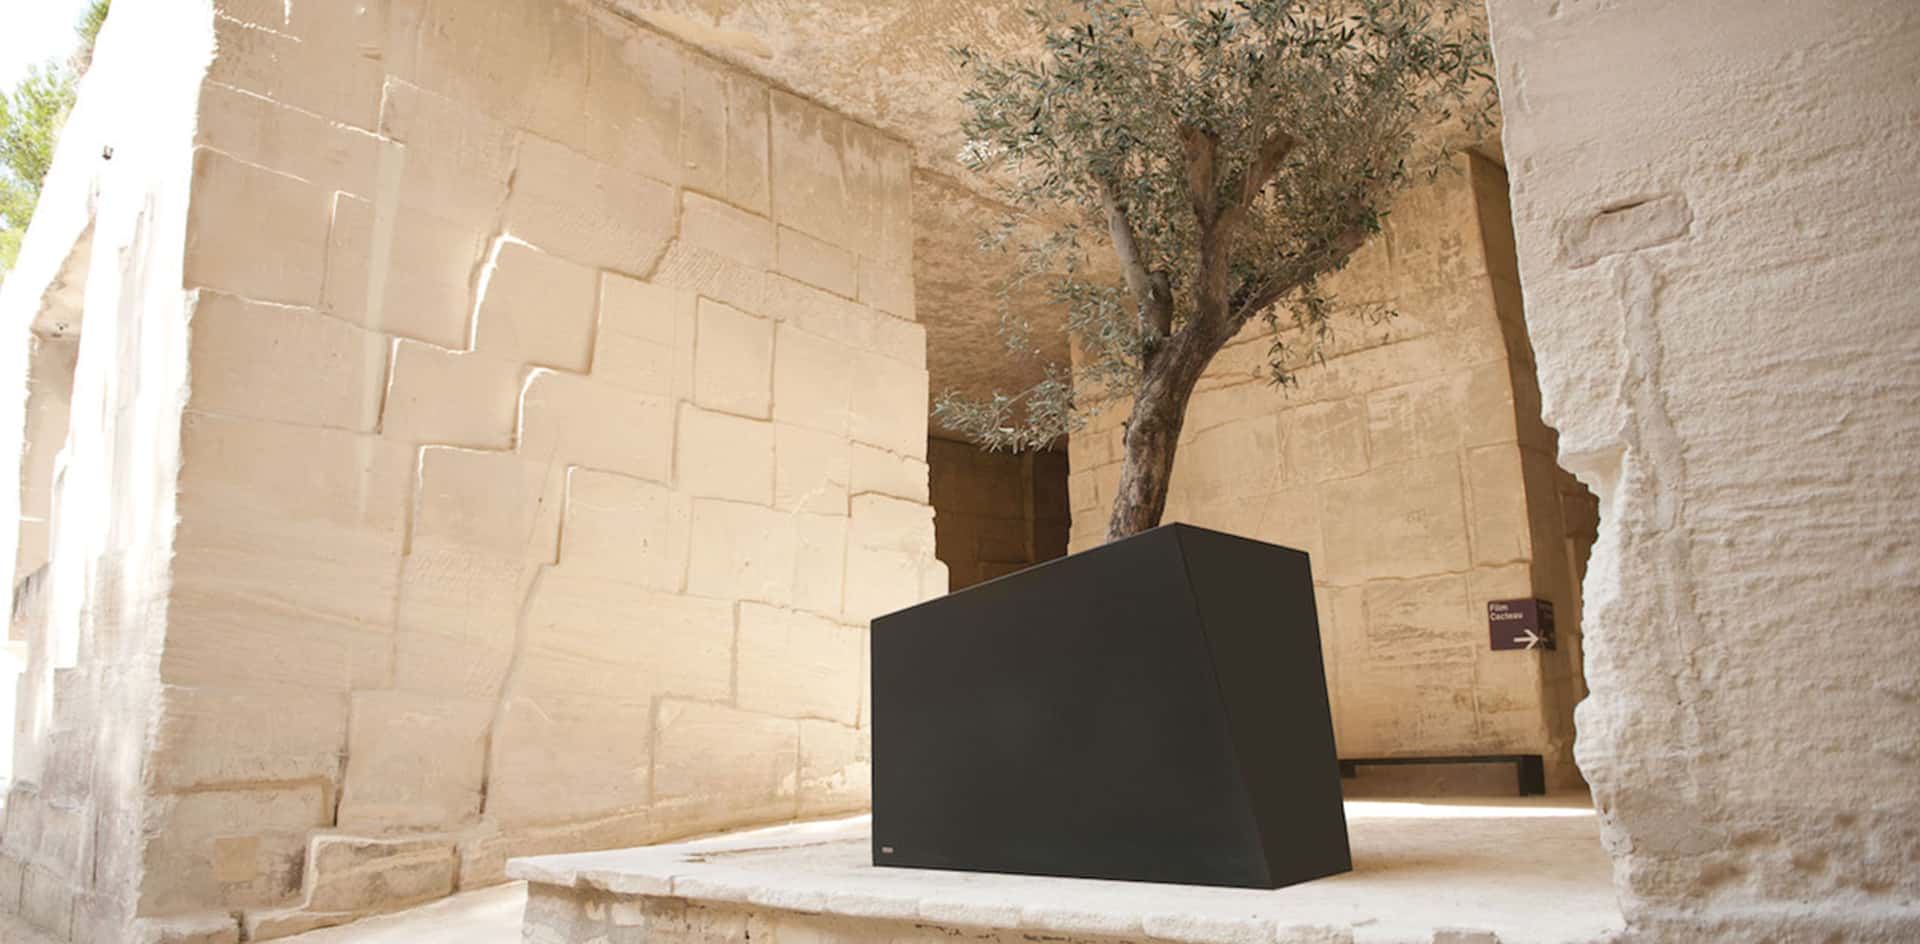 Bac orangerie en métal DEGRE9 pour le fleurissement des villes et de l'espace public par CYRIA fabricant de mobilier urbain